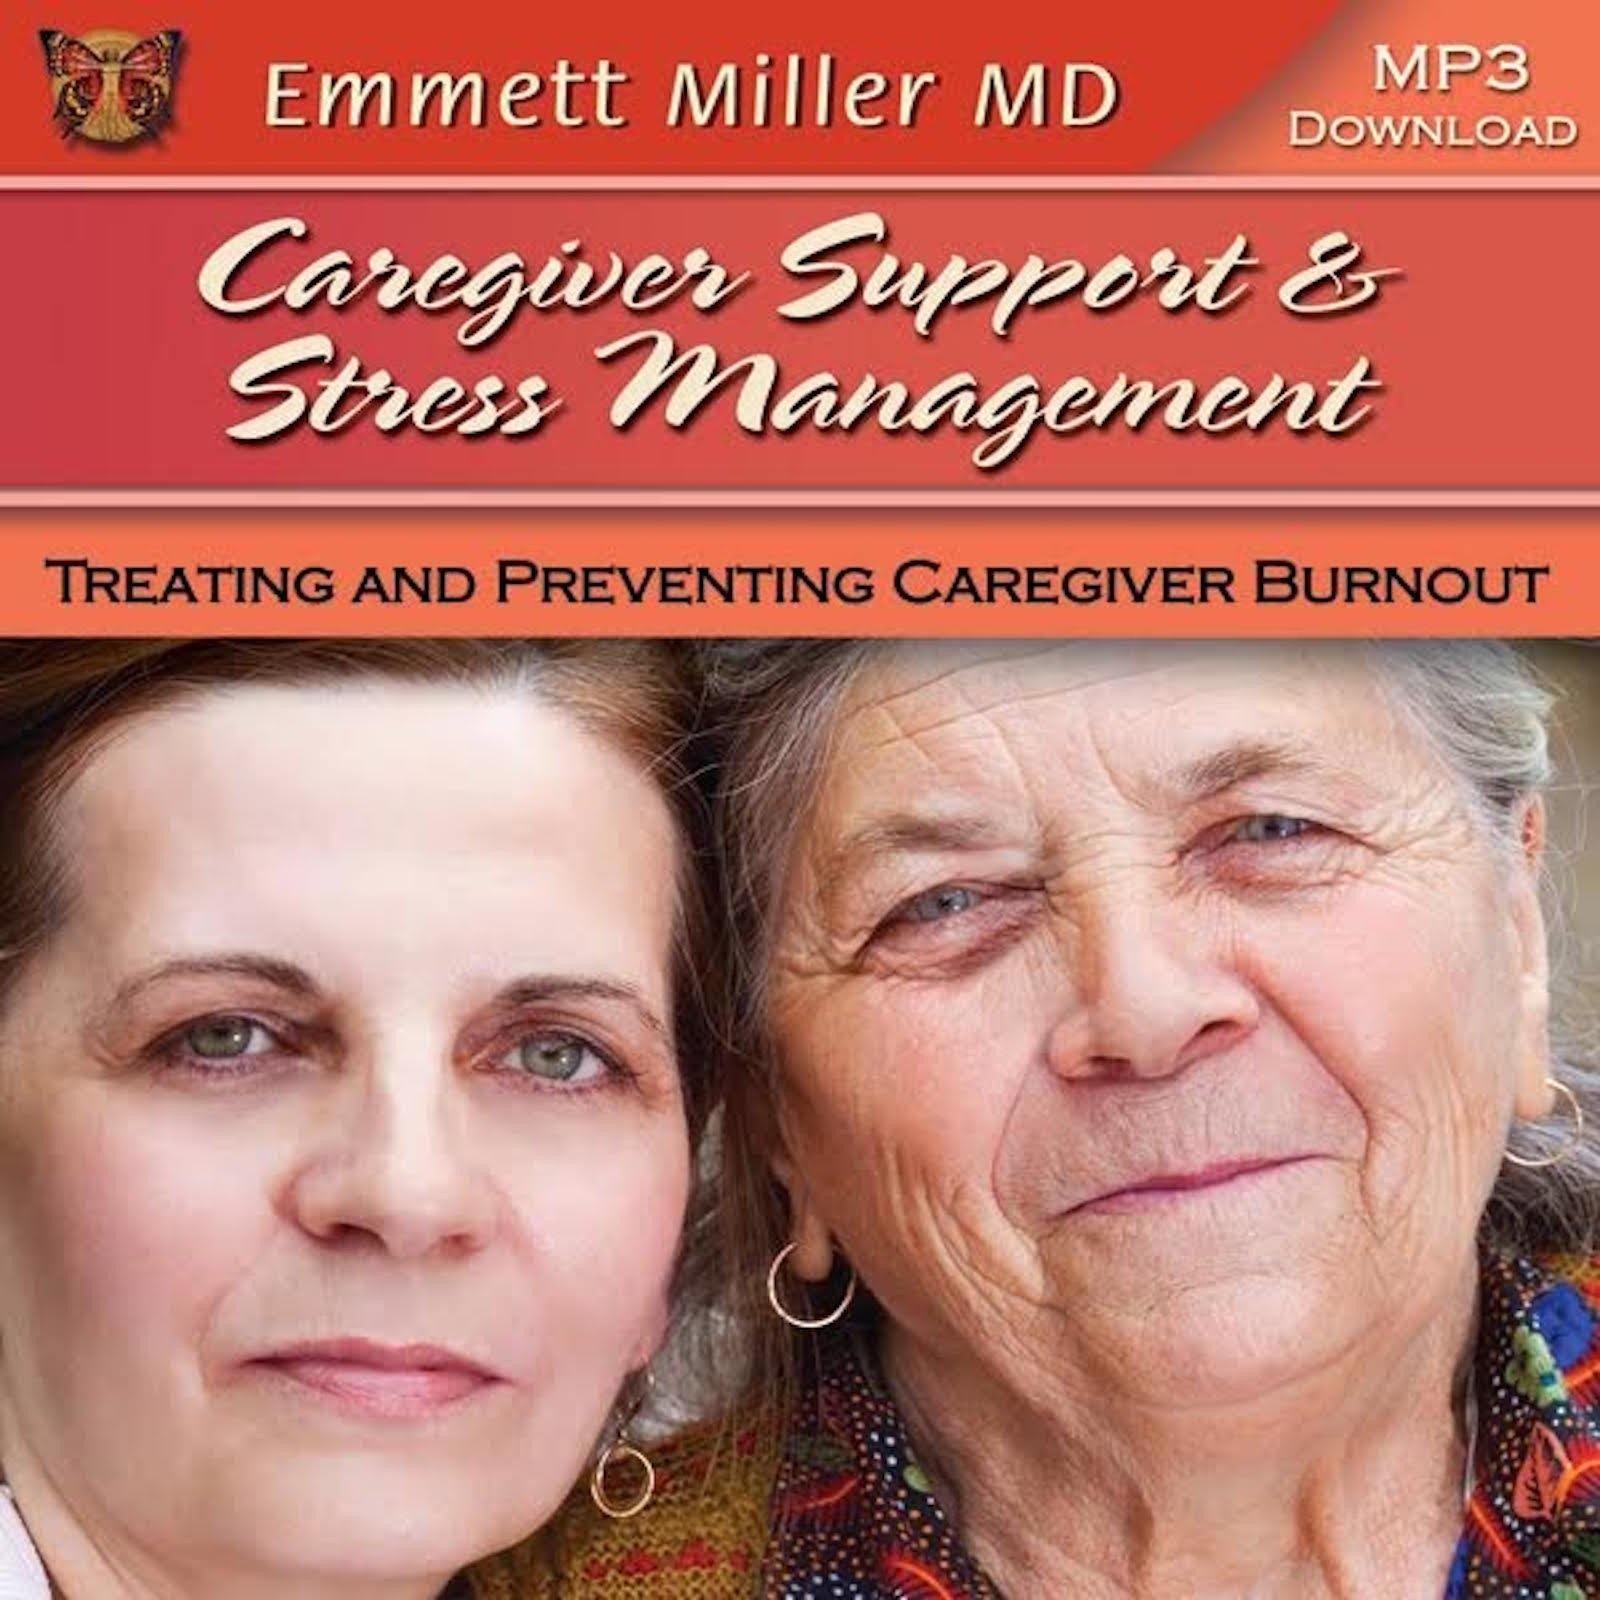 Caregiver Support and Stress Management – Treating and Preventing Caregiver Burnout with Dr. Emmett Miller Audio Program Dr. Emmett Miller - BetterListen!